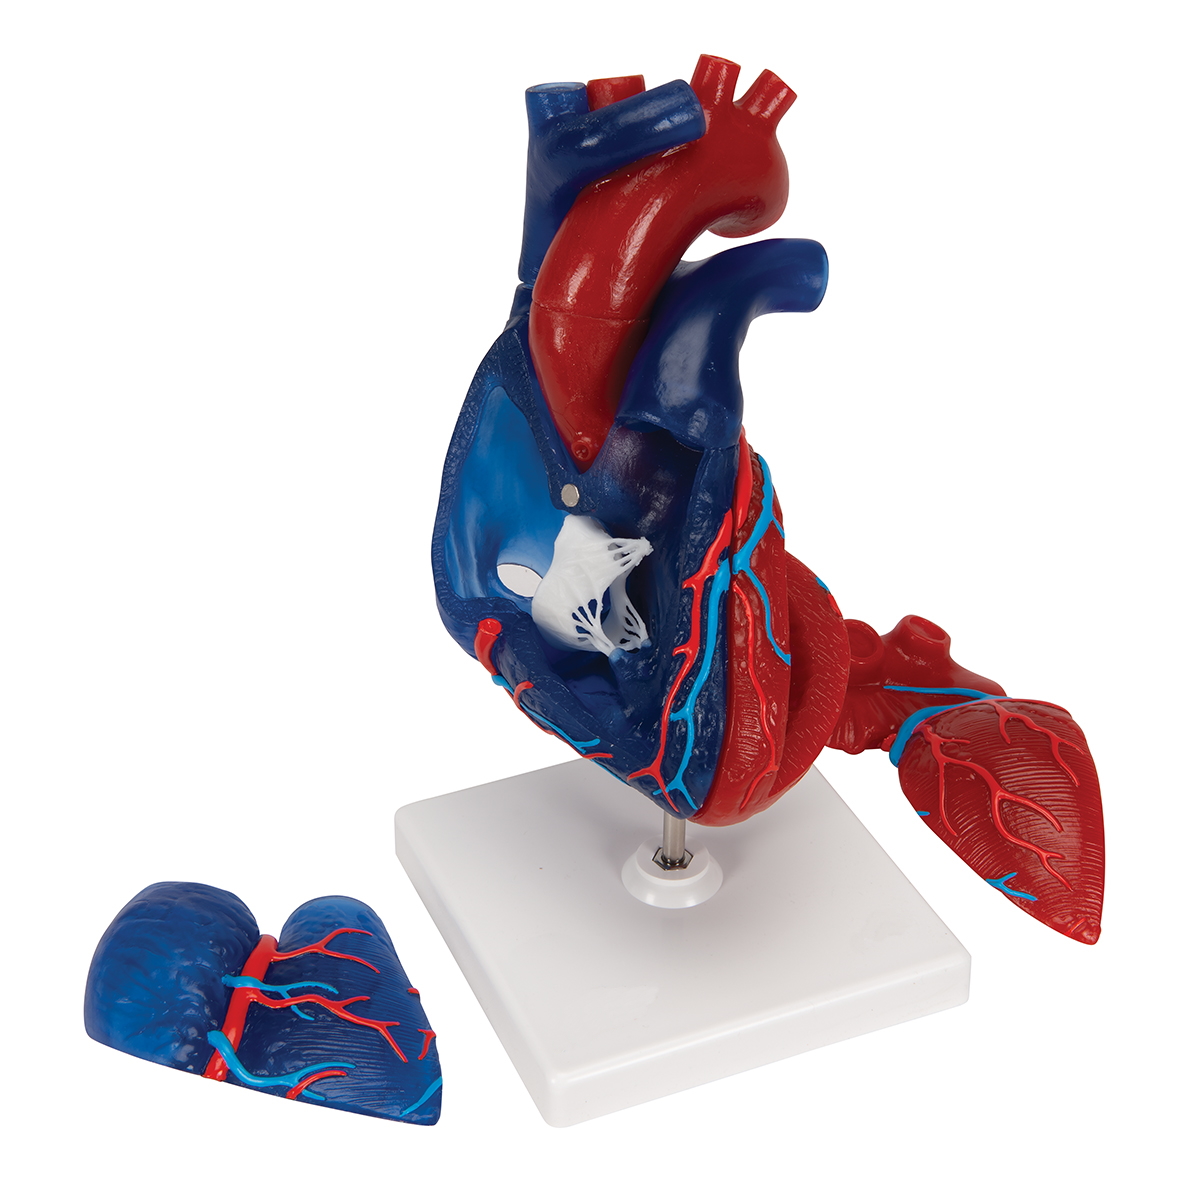 НОВИНКА // Модель серця людини в натуральну величину, 5 частин